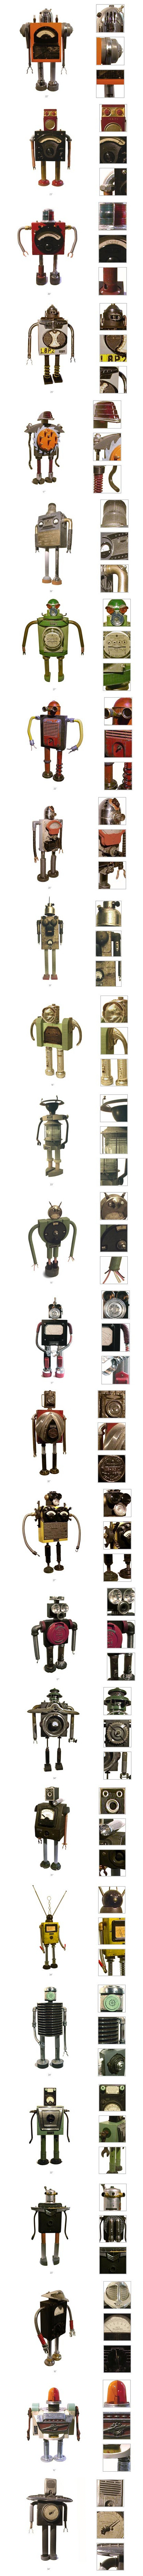 由bennettrobot工作室设计的复古机器人铁皮玩偶，造型古拙、生涩，体现了工业化时期人们对于机械人的畅想。